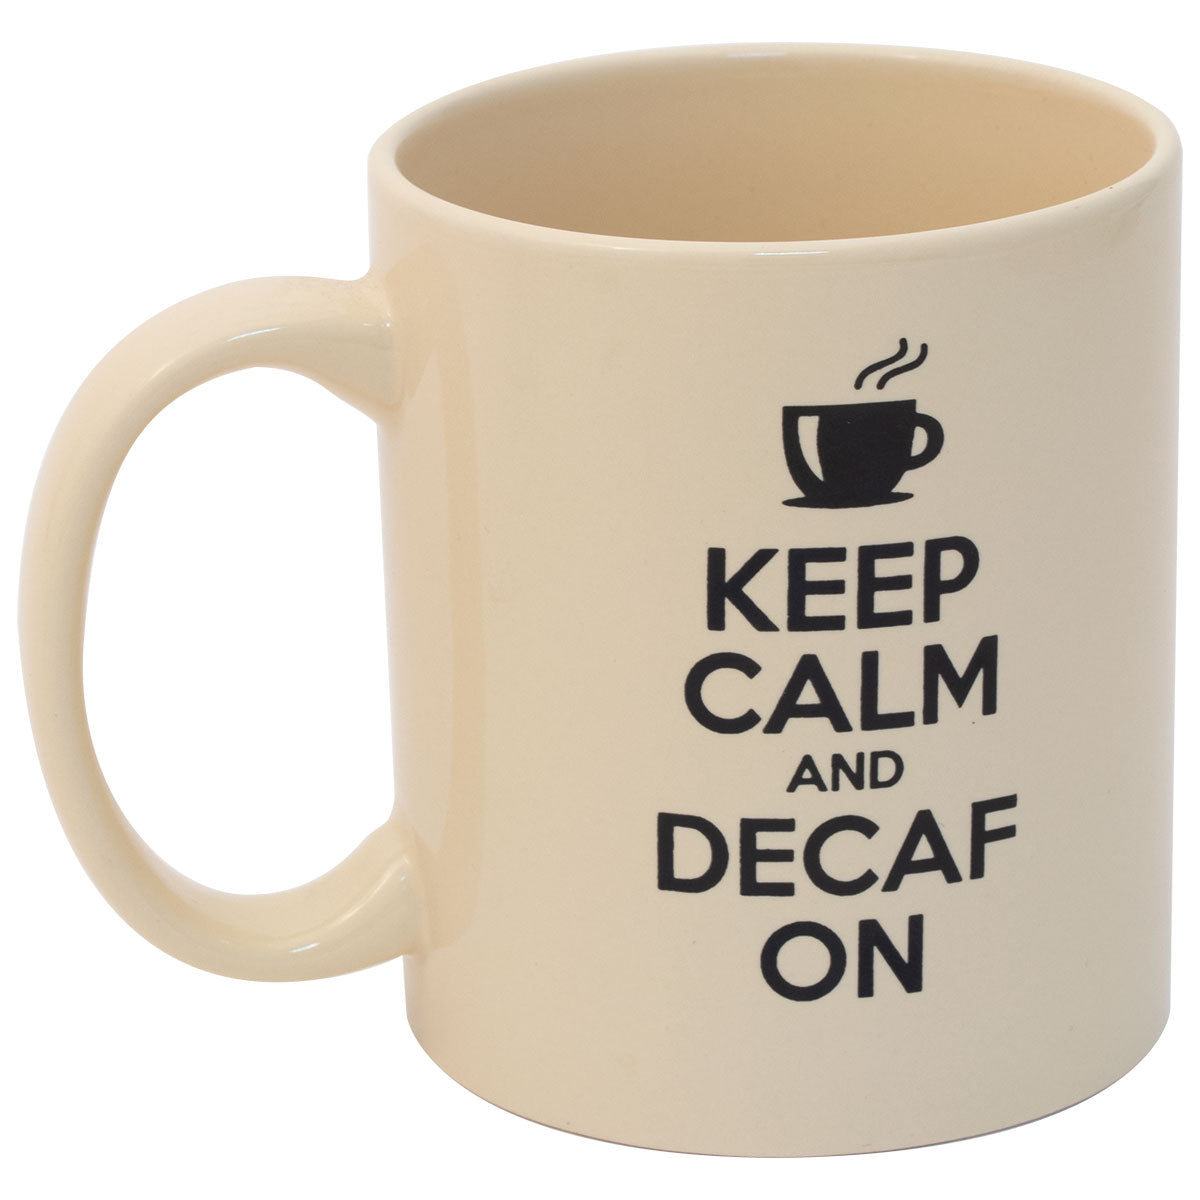 Maud’s “Keep Calm And Decaf On” Mug – 8oz